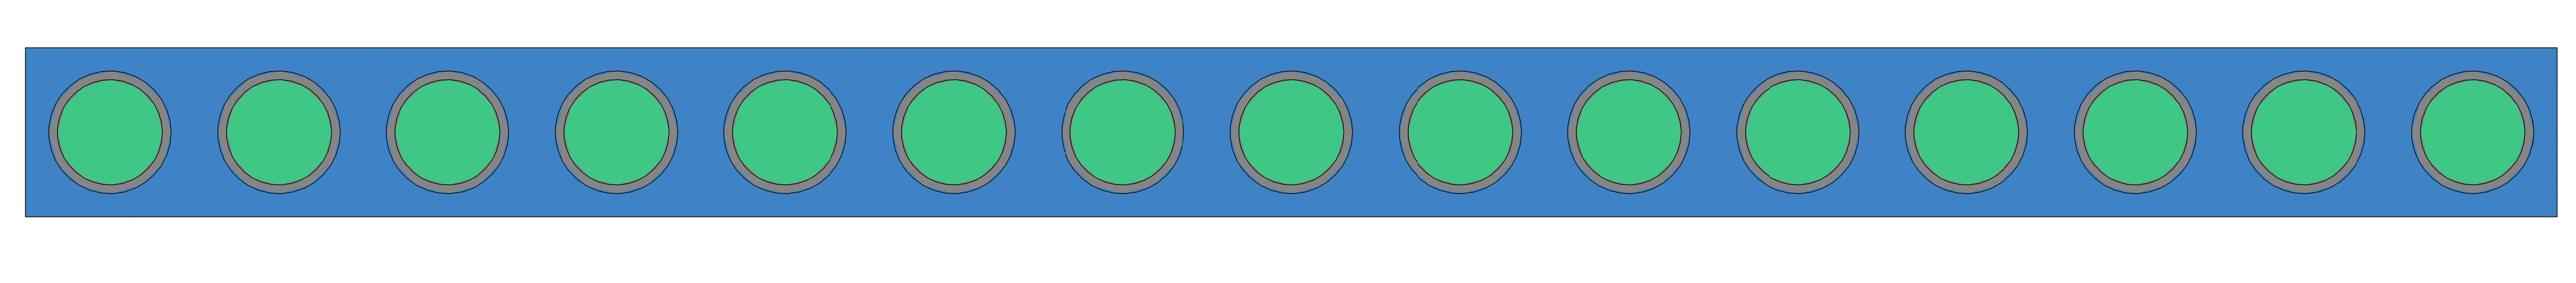 Рисунок 2 – рендер поперечного сечения расчетного варианта модели активной зоны